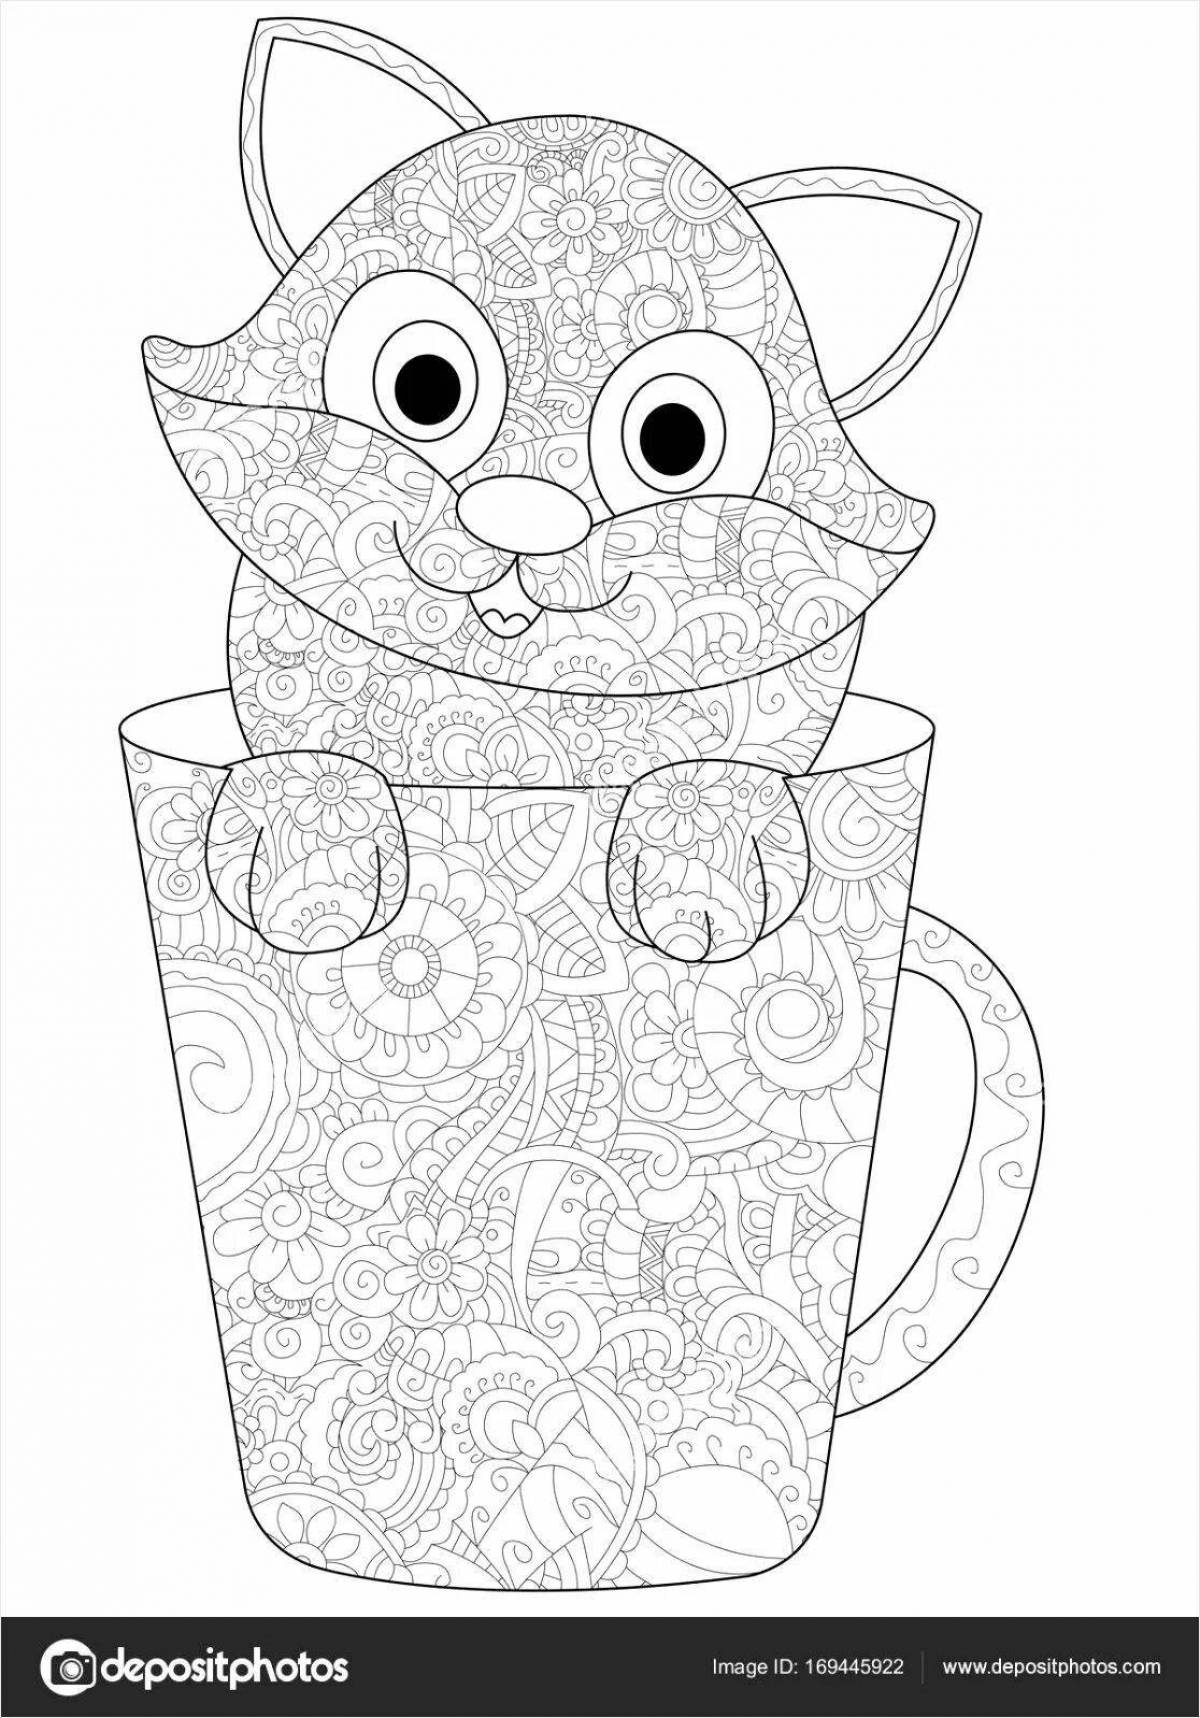 Adorable kitten in a mug coloring book